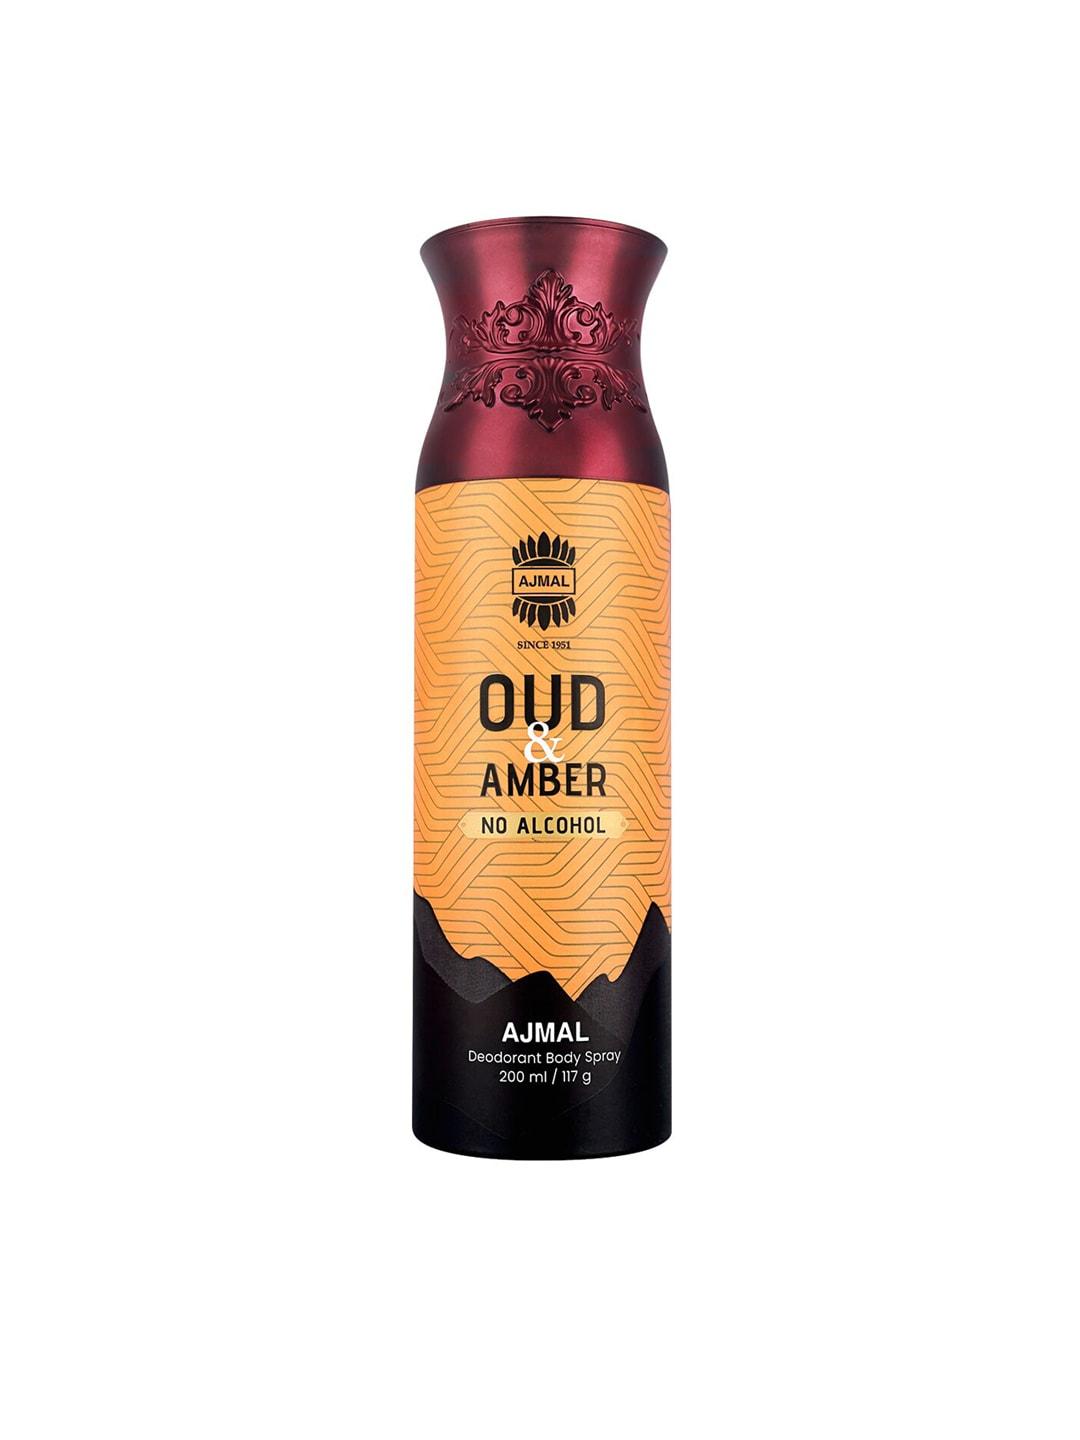 Ajmal Oud Amber Deodorant Body Spray - 200ml/117g